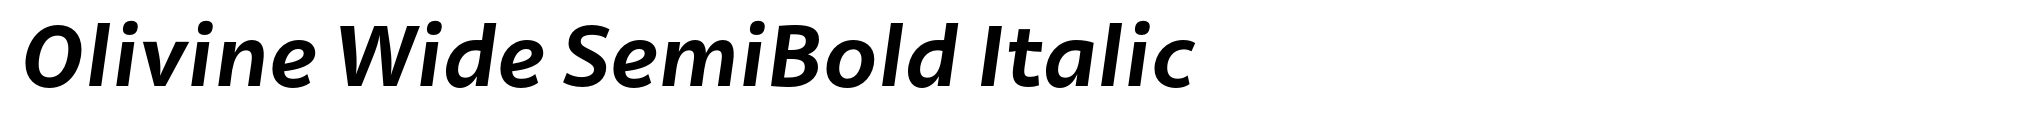 Olivine Wide SemiBold Italic image